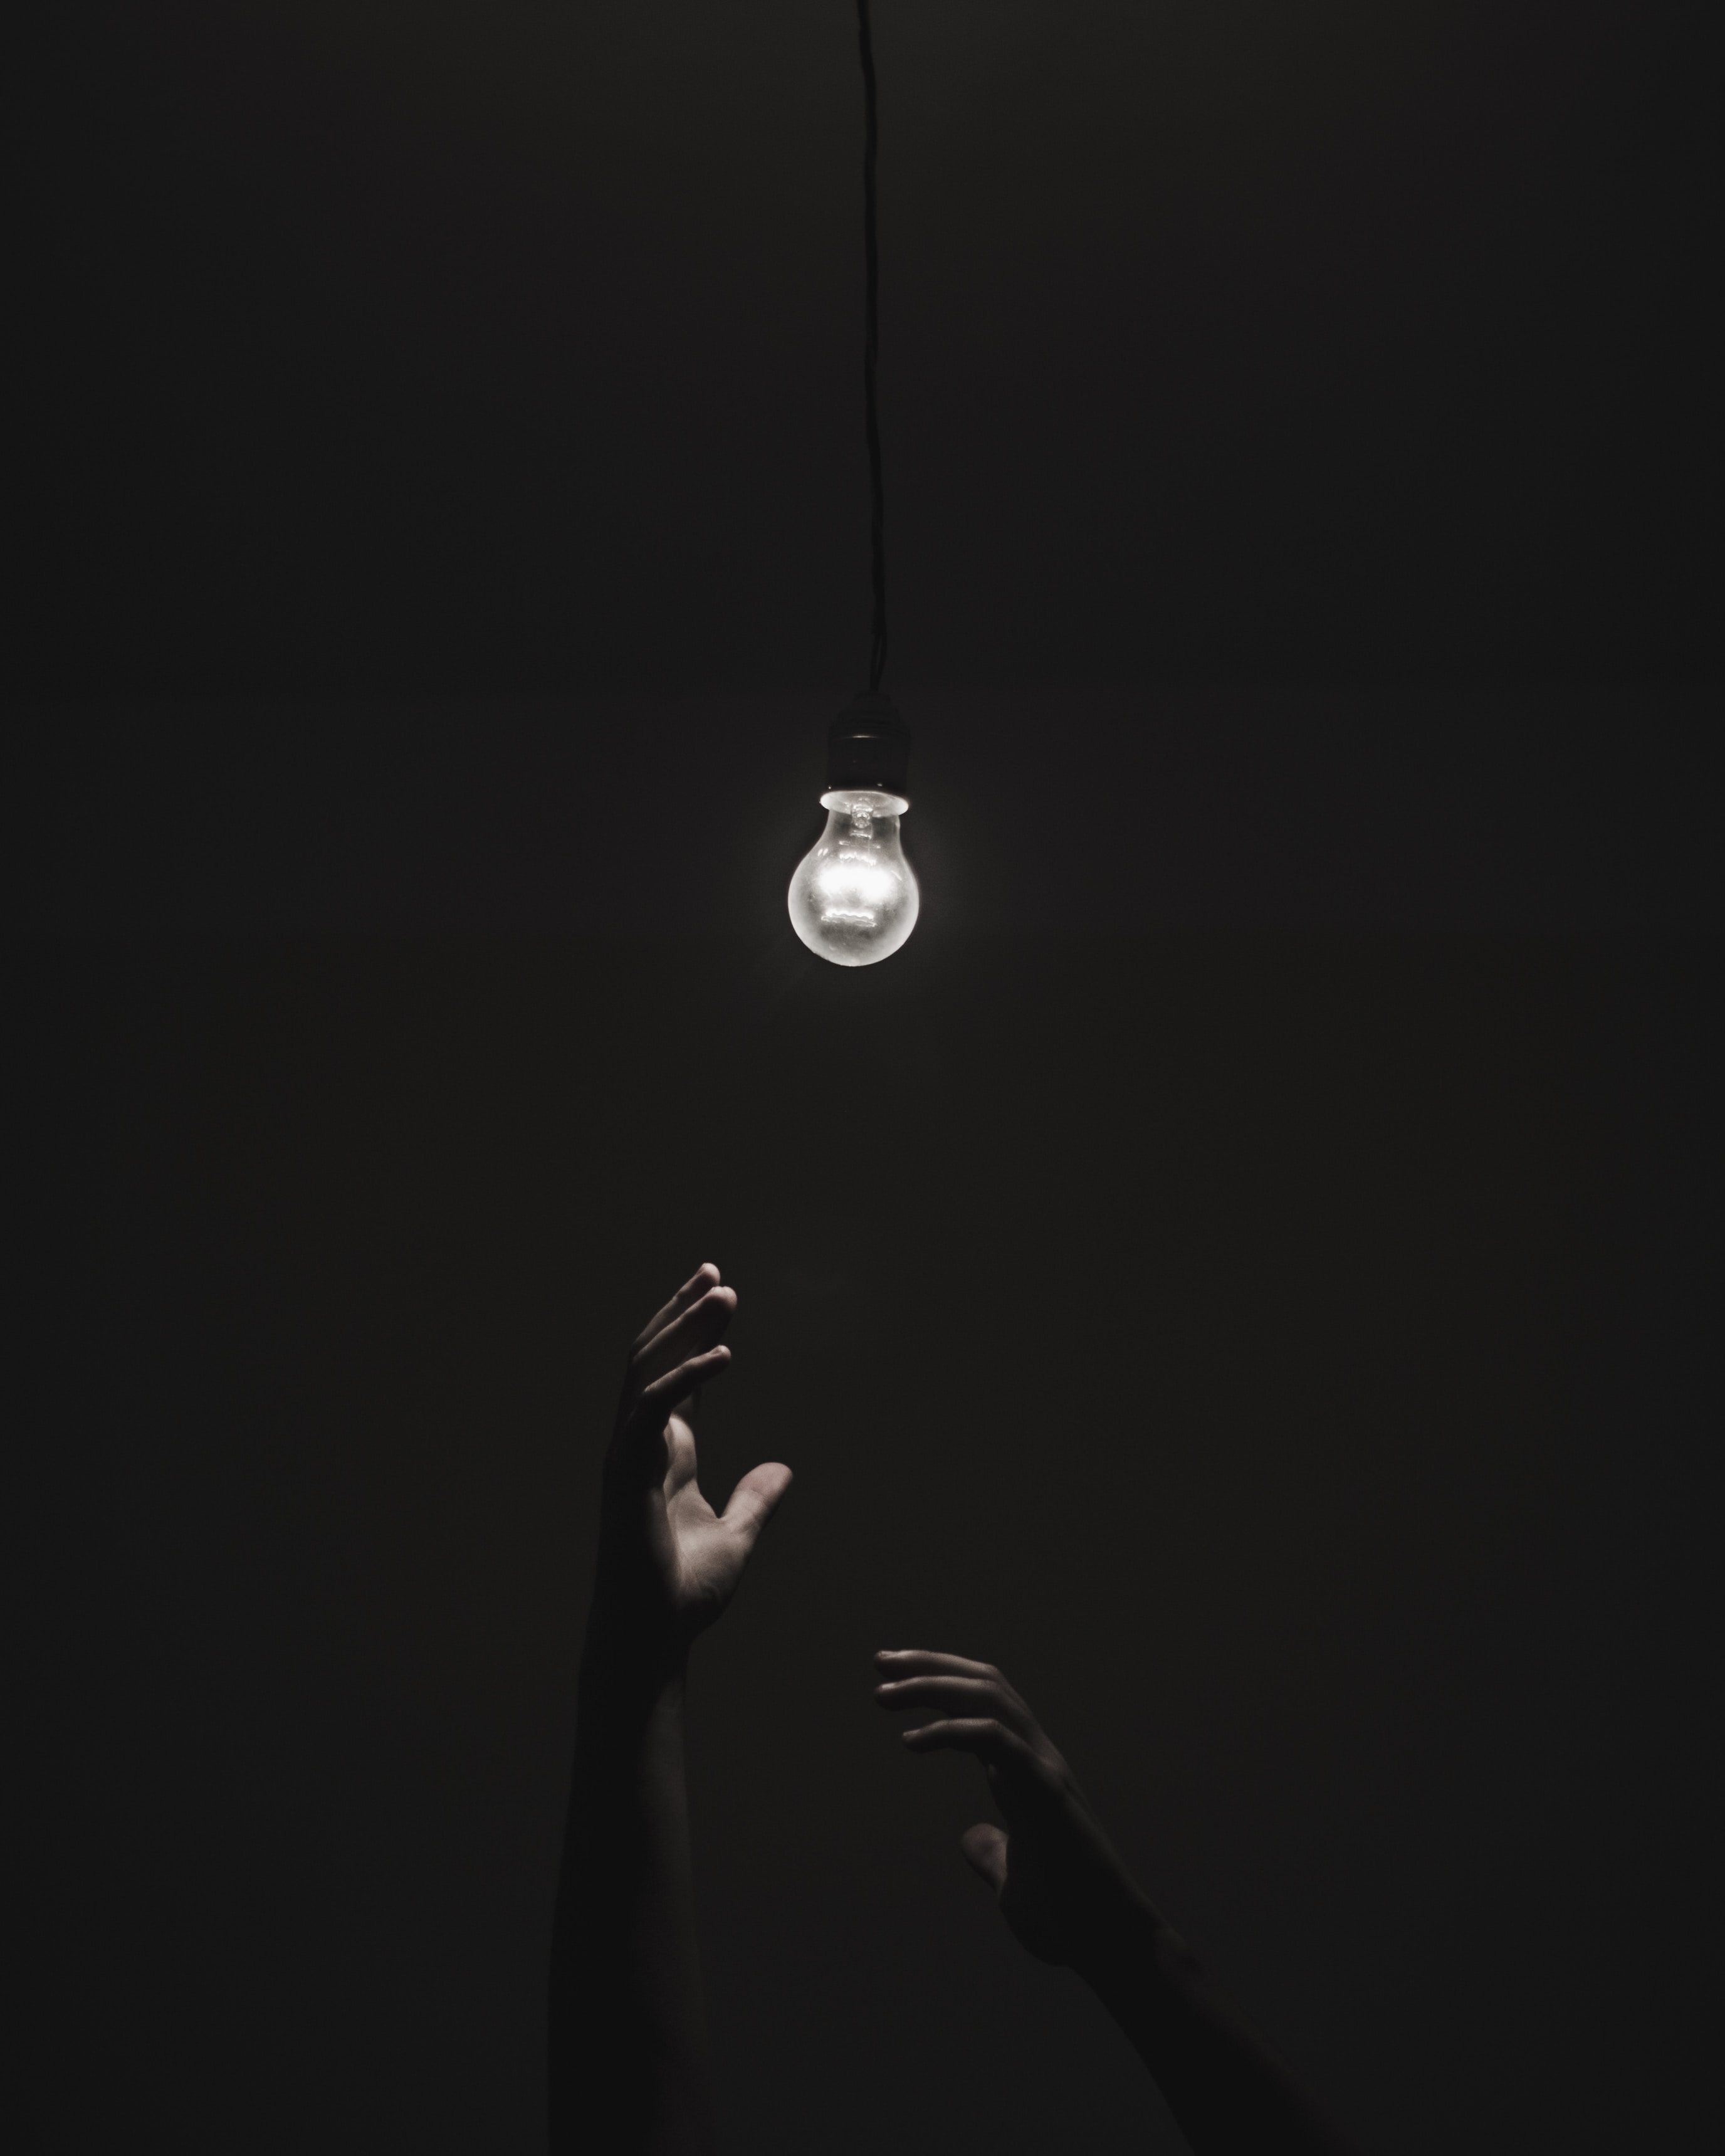 dark, illumination, black, lighting, hands, light bulb